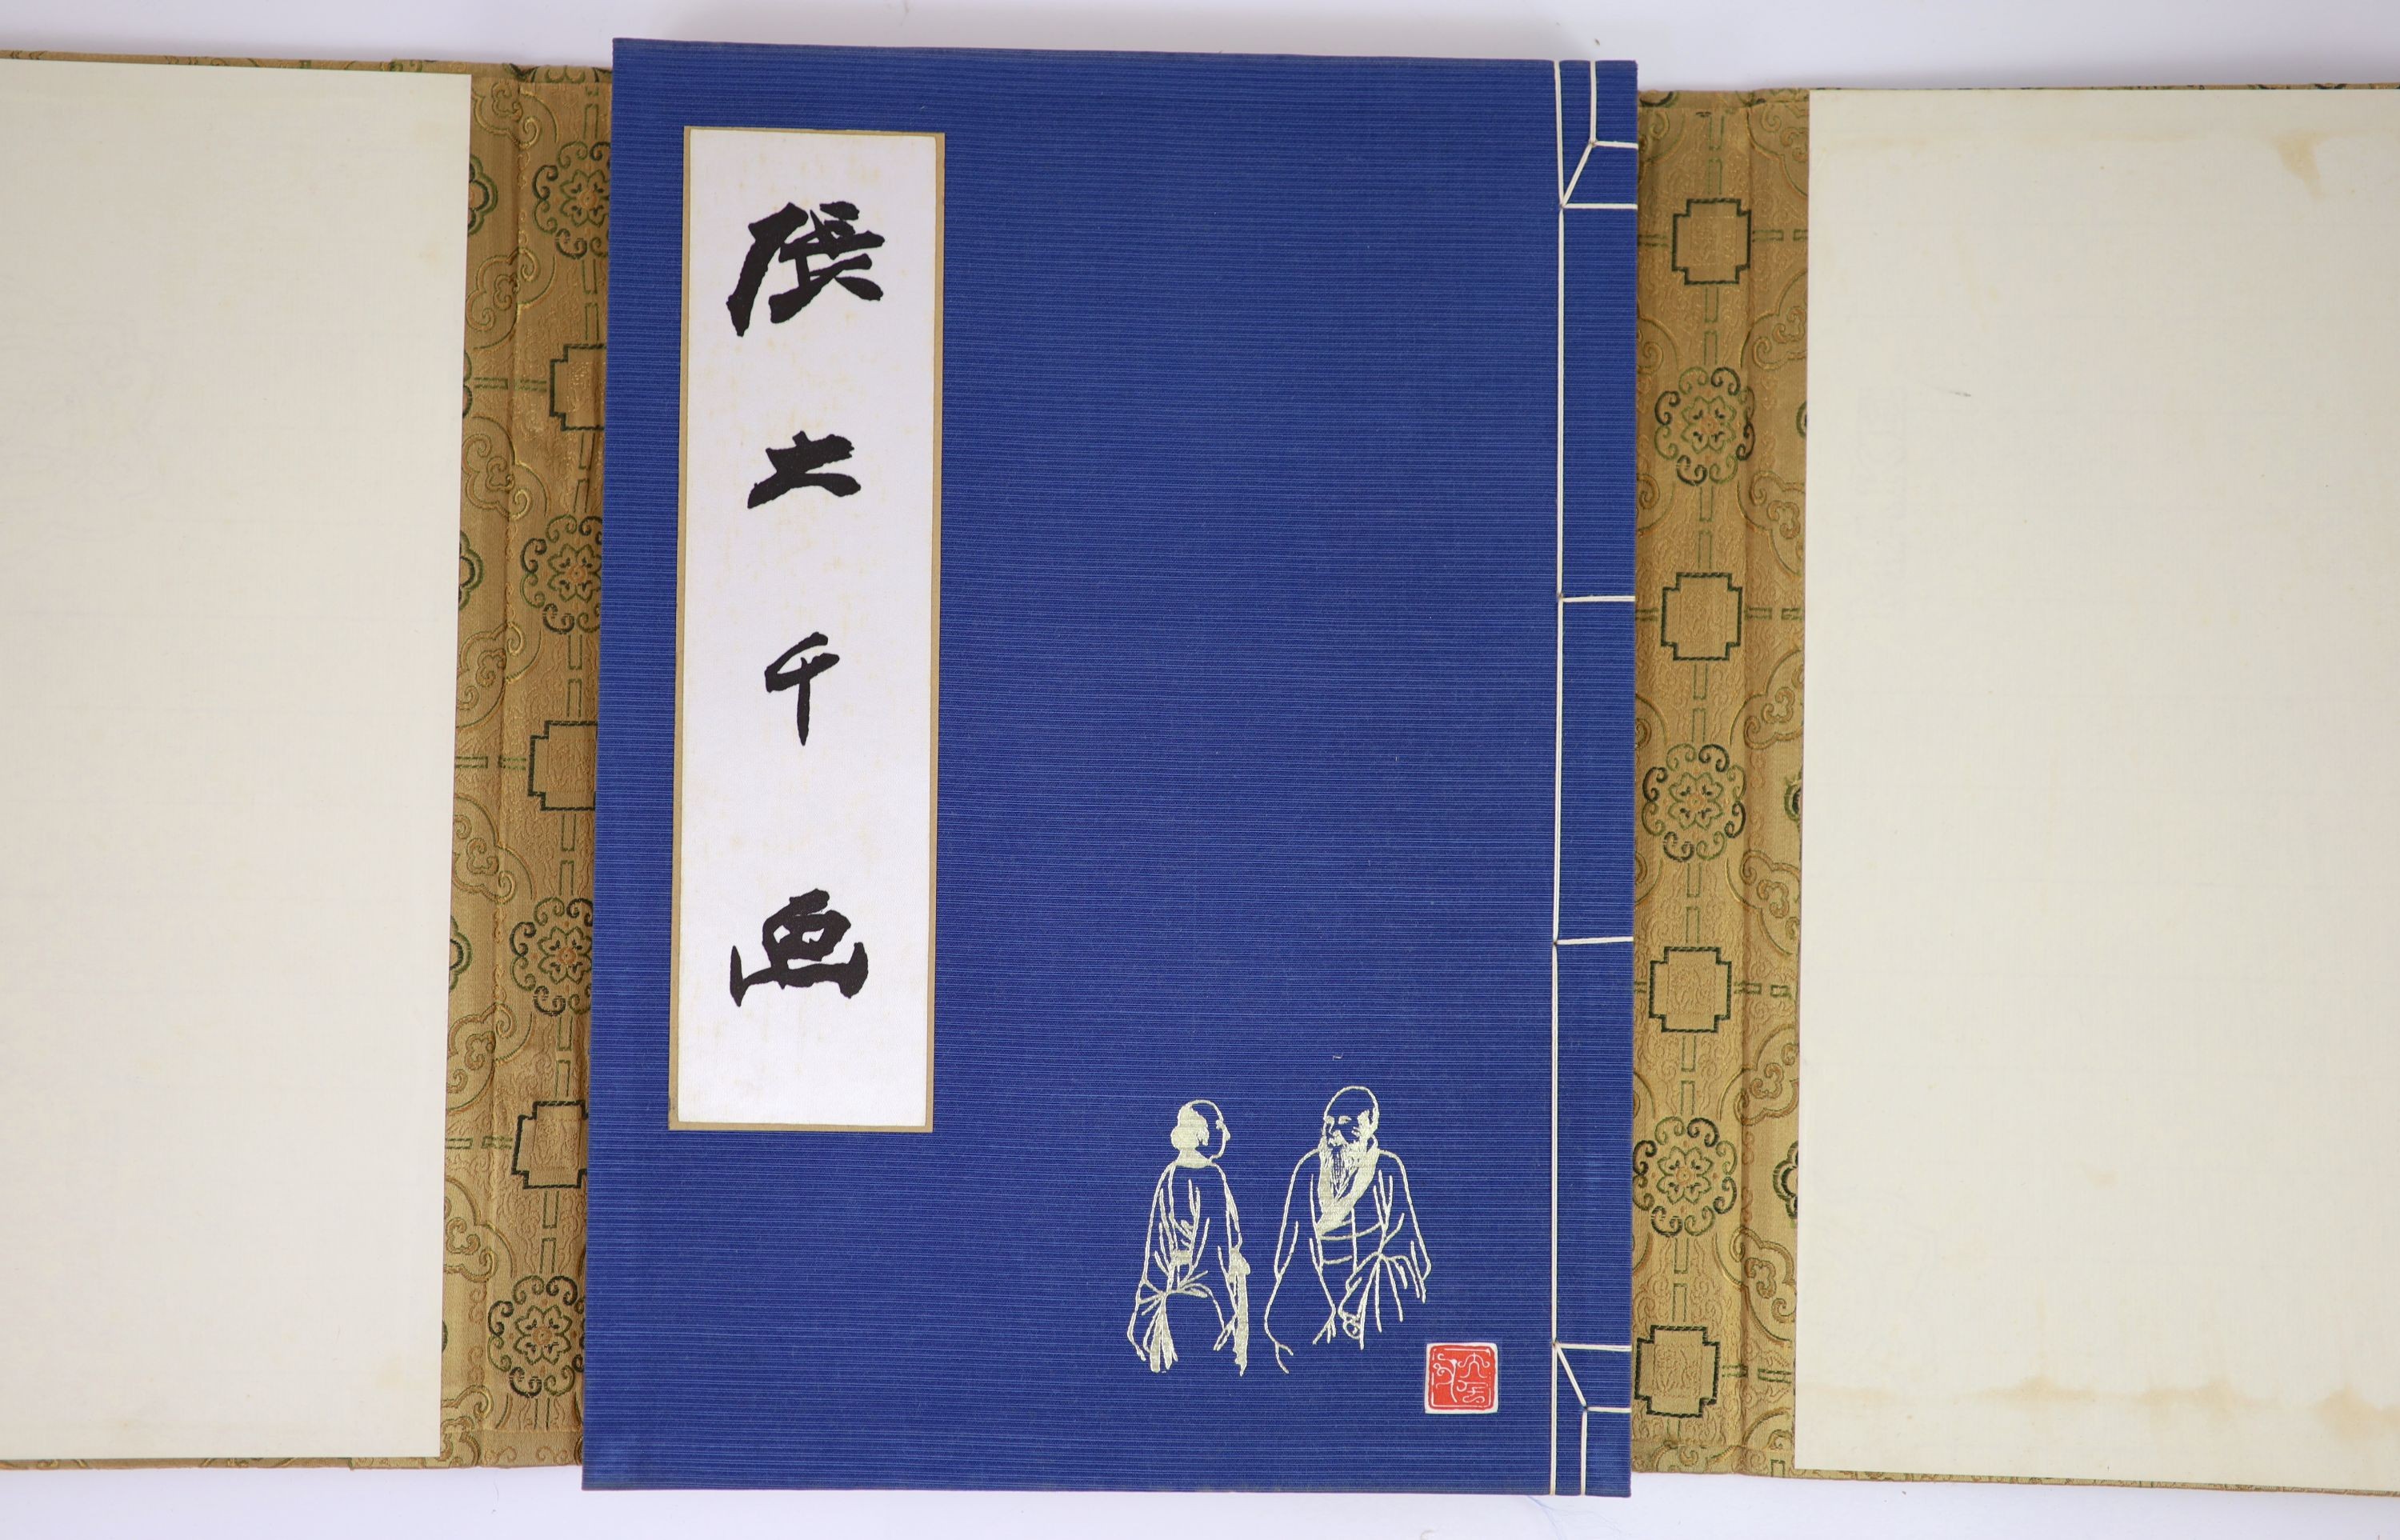 Da-Chien (Professor Chang), 'Chinese Painting', Yee Tin Tong Printing Press Ltd, Hong Kong, 1961, gold brocade case